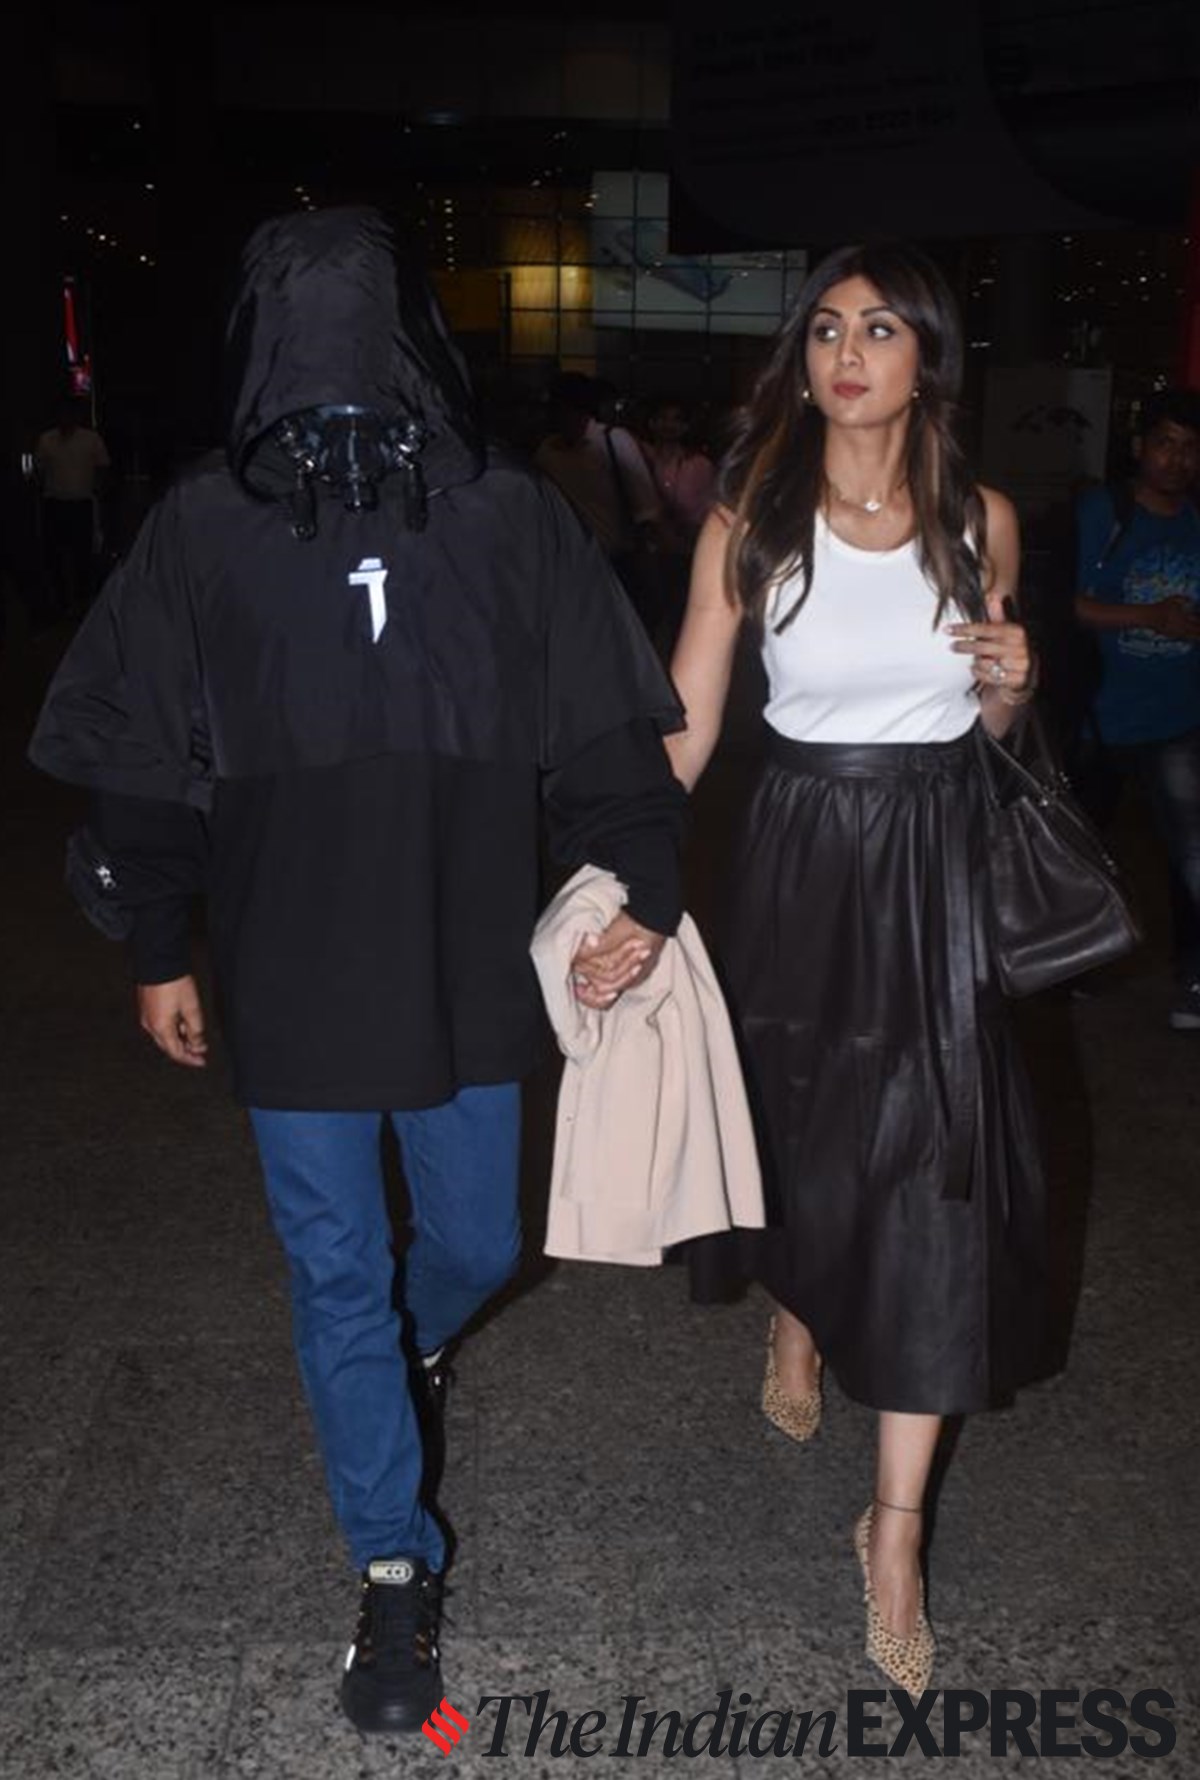 Deepika Padukone and Malaika Arora's Louis Vuitton handbags are